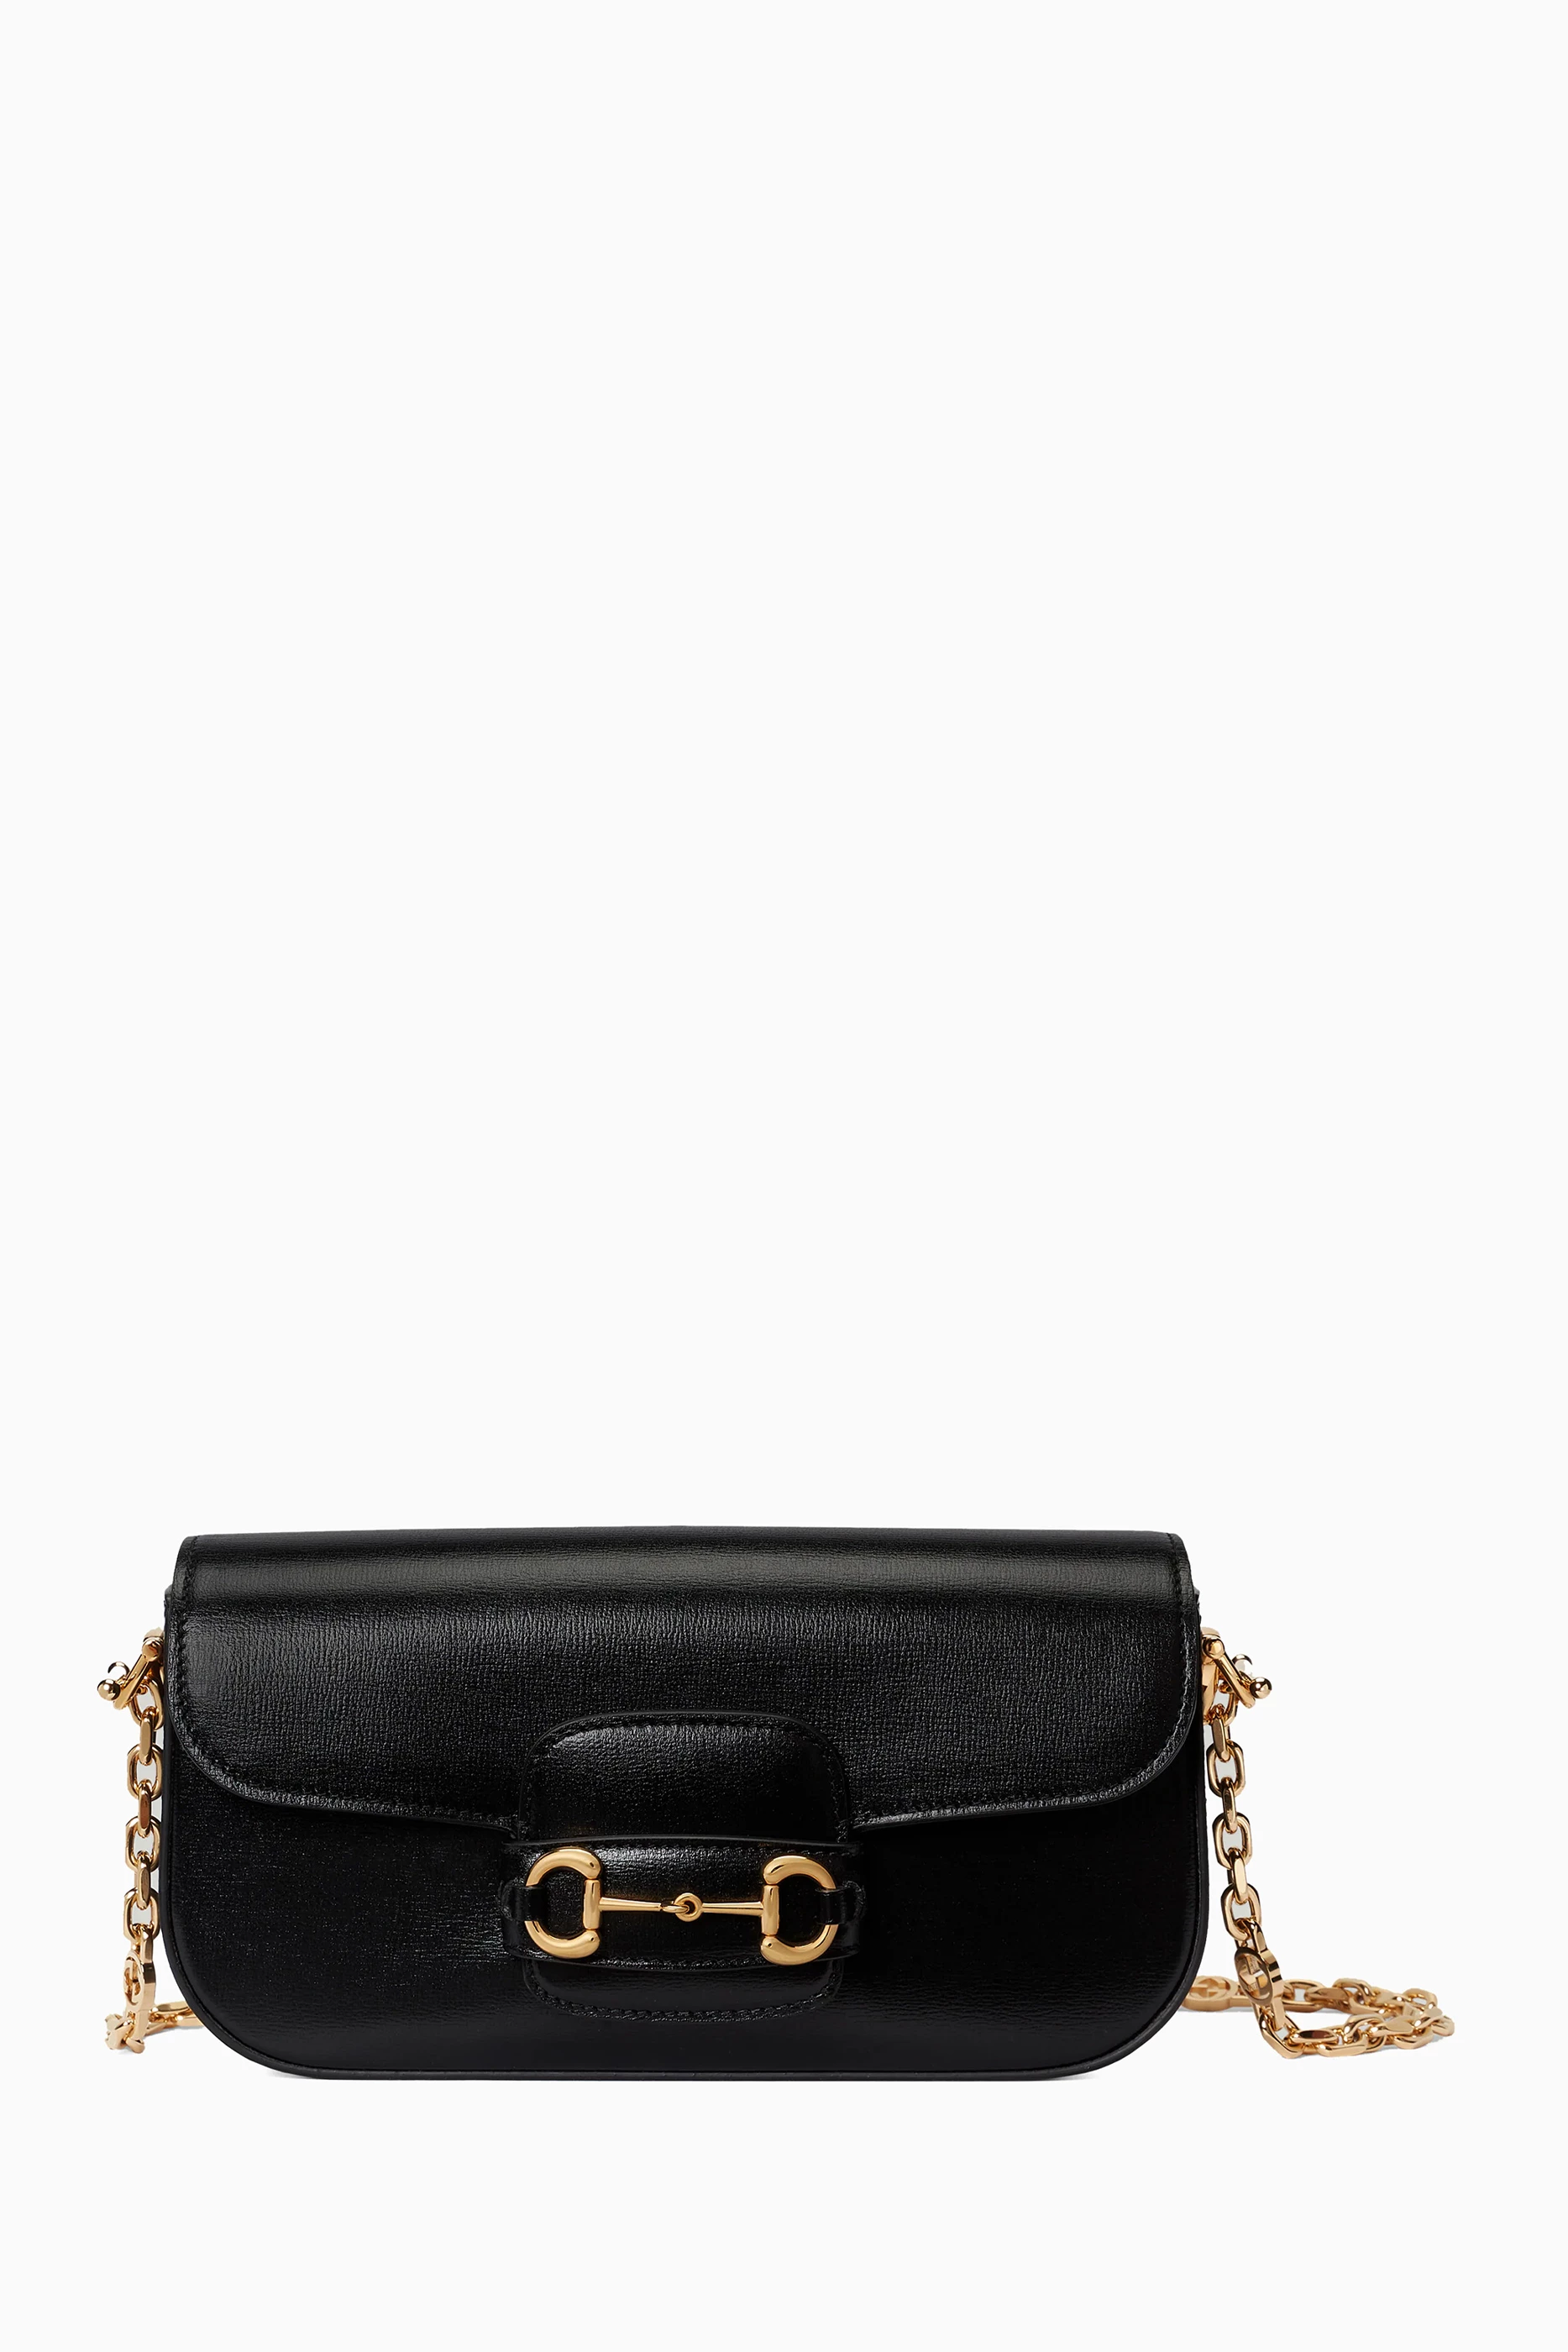 Gucci Horsebit 1955 Small Shoulder Bag – ZAK BAGS ©️